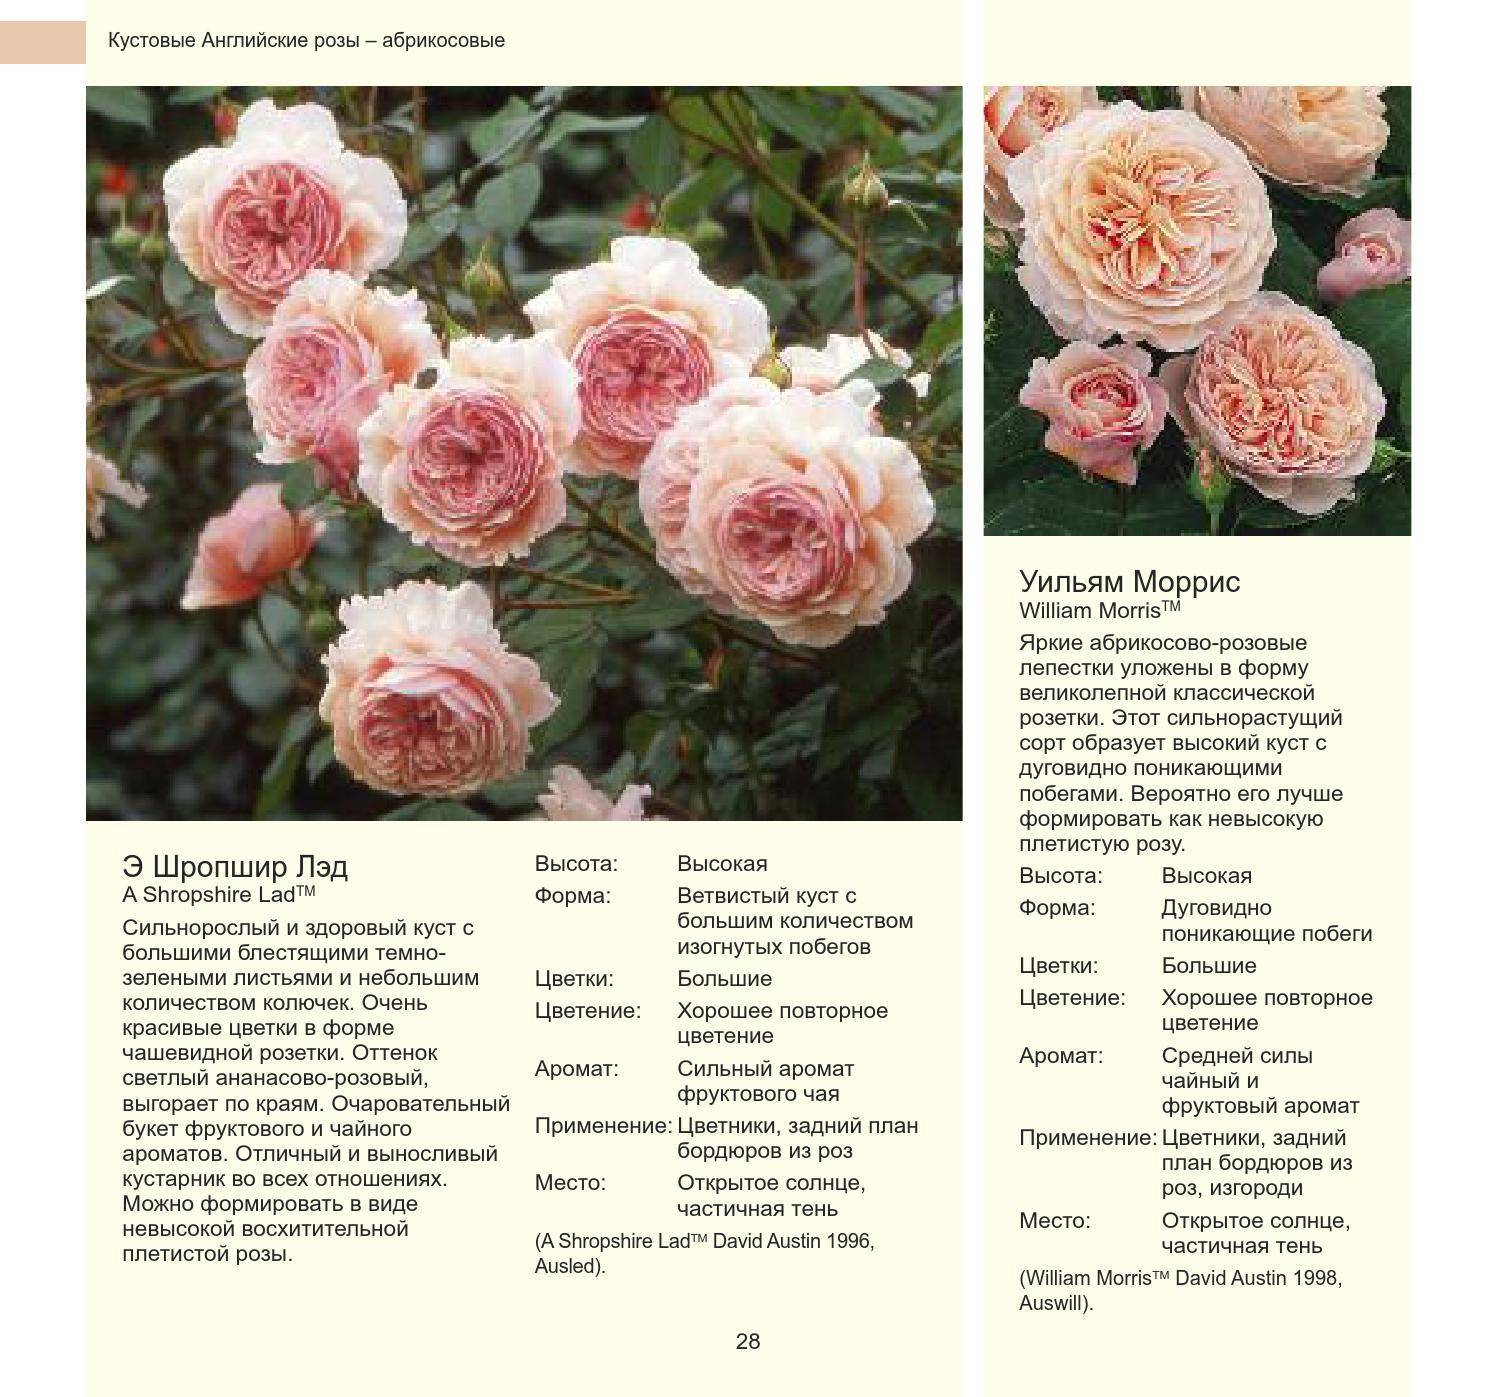 Виды и сорта роз - фото, названия и описания (каталог)